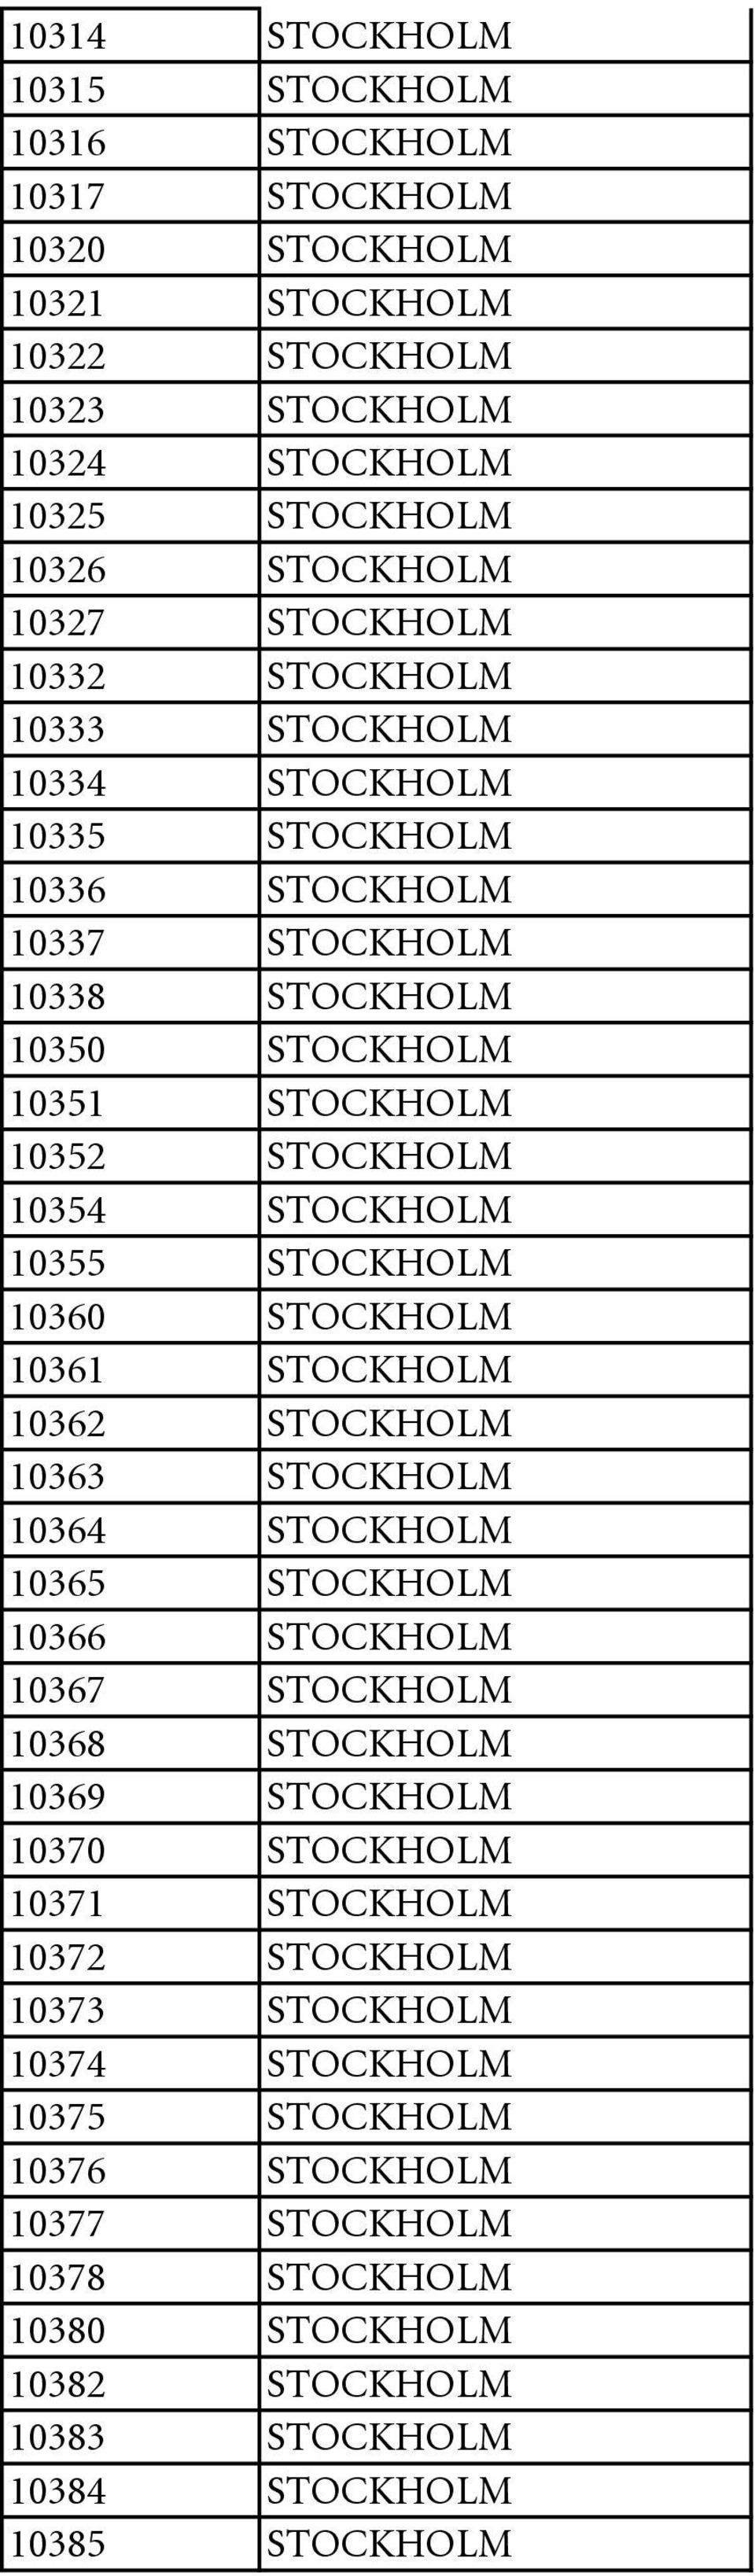 10360 STOCKHOLM 10361 STOCKHOLM 10362 STOCKHOLM 10363 STOCKHOLM 10364 STOCKHOLM 10365 STOCKHOLM 10366 STOCKHOLM 10367 STOCKHOLM 10368 STOCKHOLM 10369 STOCKHOLM 10370 STOCKHOLM 10371 STOCKHOLM